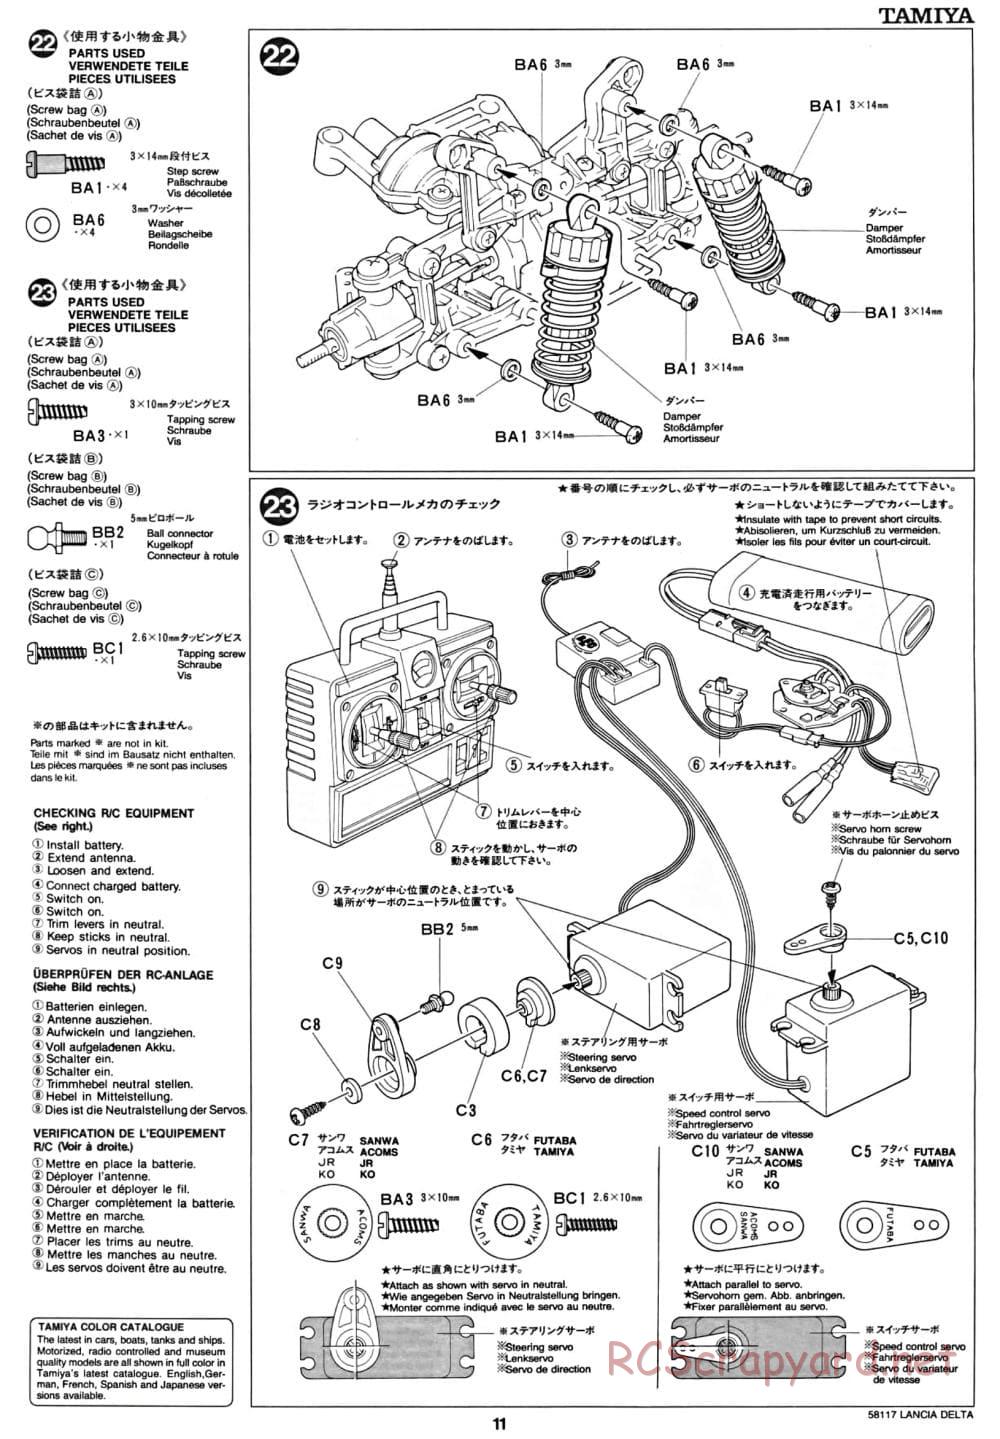 Tamiya - Lancia Delta HF Integrale - TA-01 Chassis - Manual - Page 11